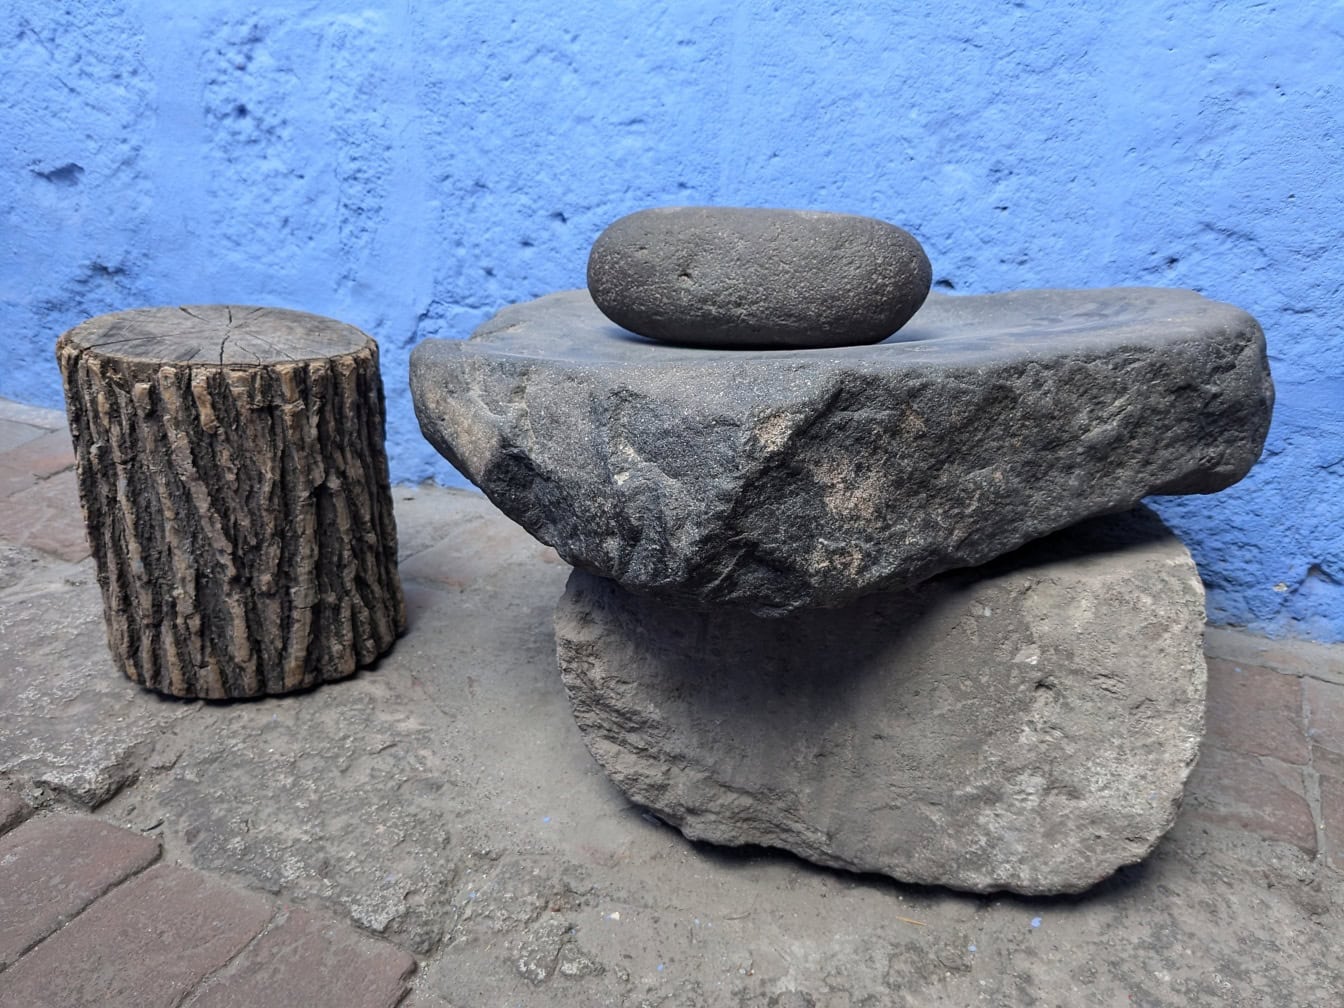 Πέτρες που χρησιμοποιούνται ως μαγειρικά σκεύη, ως μύλος για την άλεση τροφίμων, στο μοναστήρι Santa Catalina στο Περού